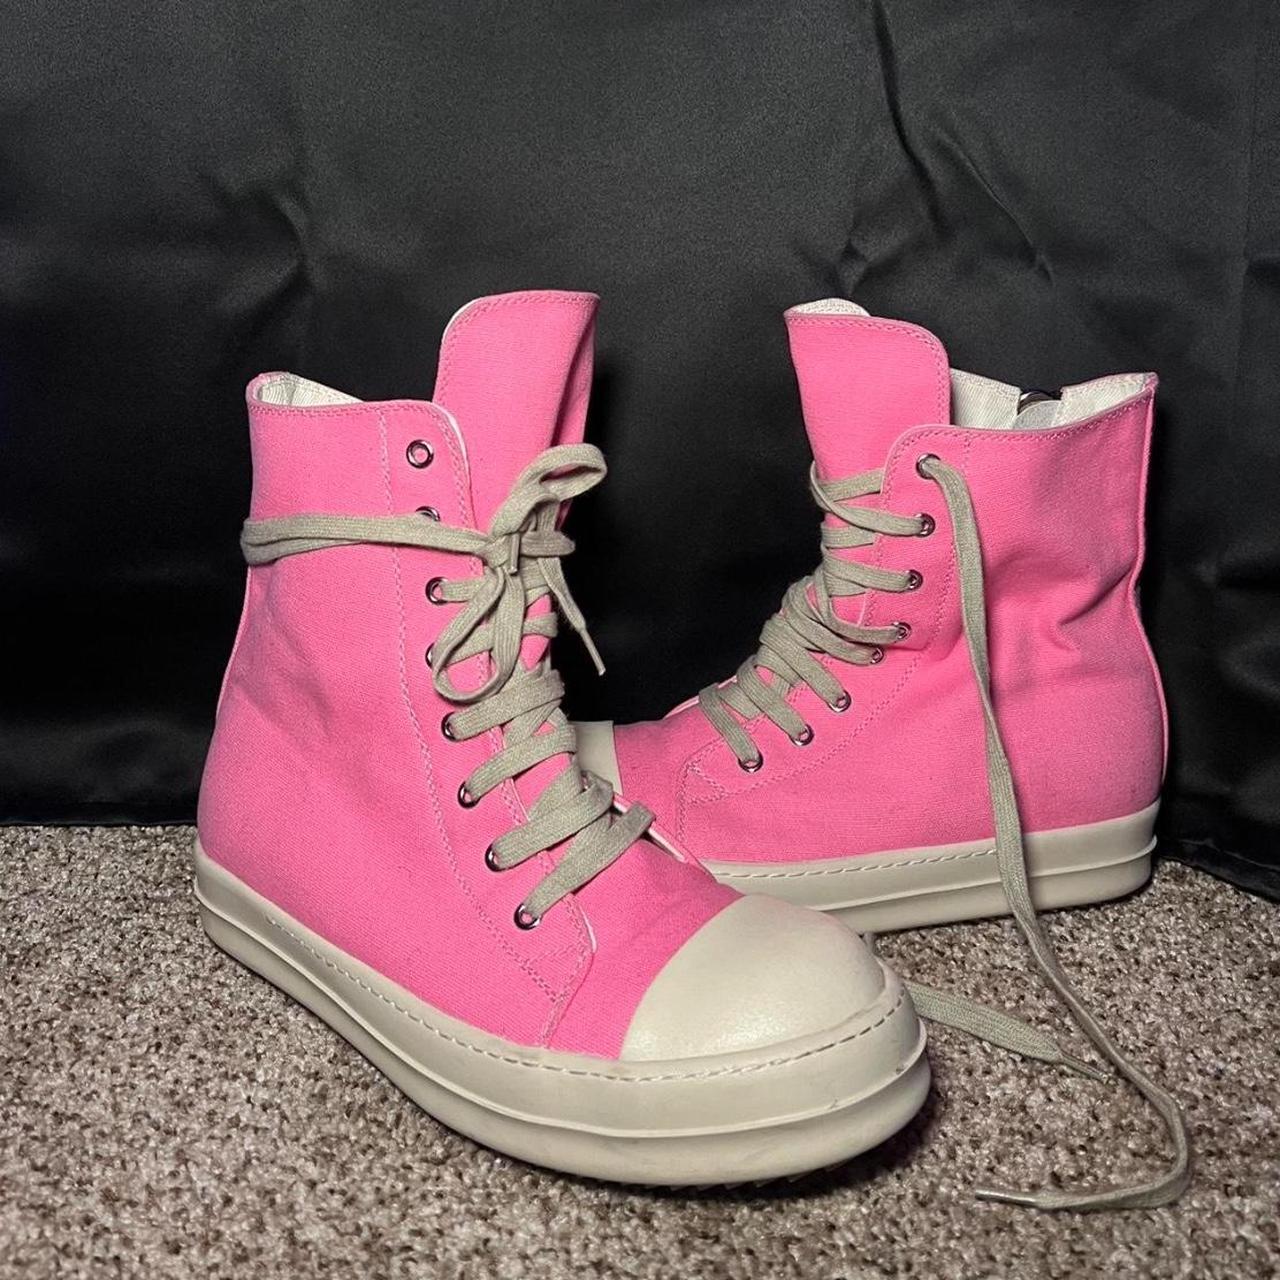 Authentic Pink Rick Owen’s Shoes - Depop